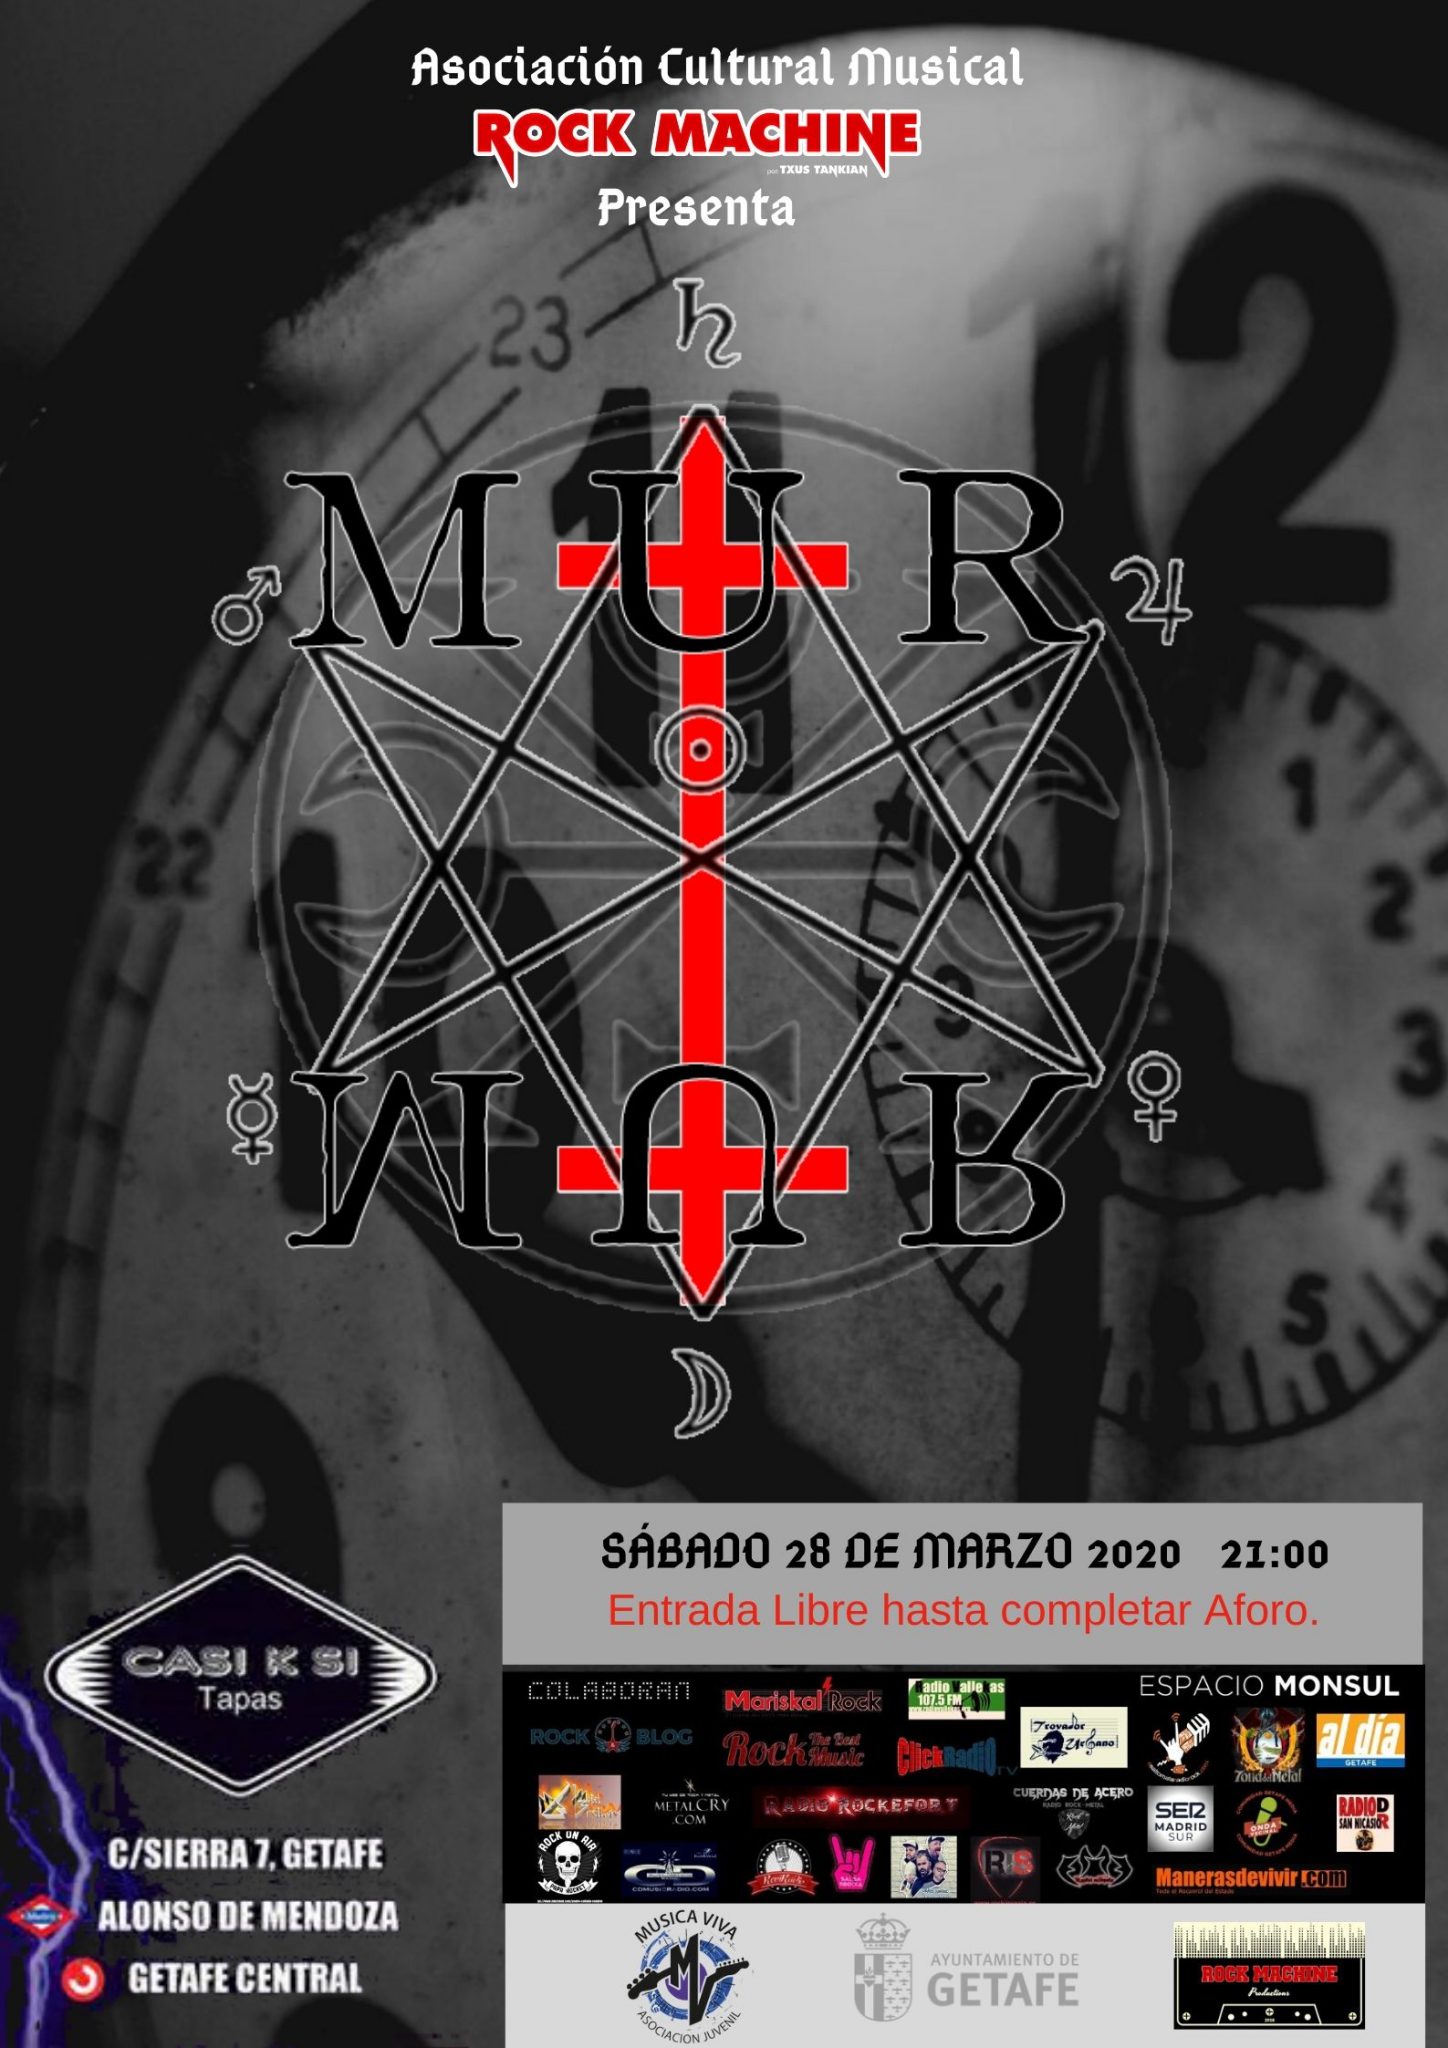 Murmur en directo con entrada libre el próximo sábado 28 de marzo en Casi k Si de Getafe (Madrid)